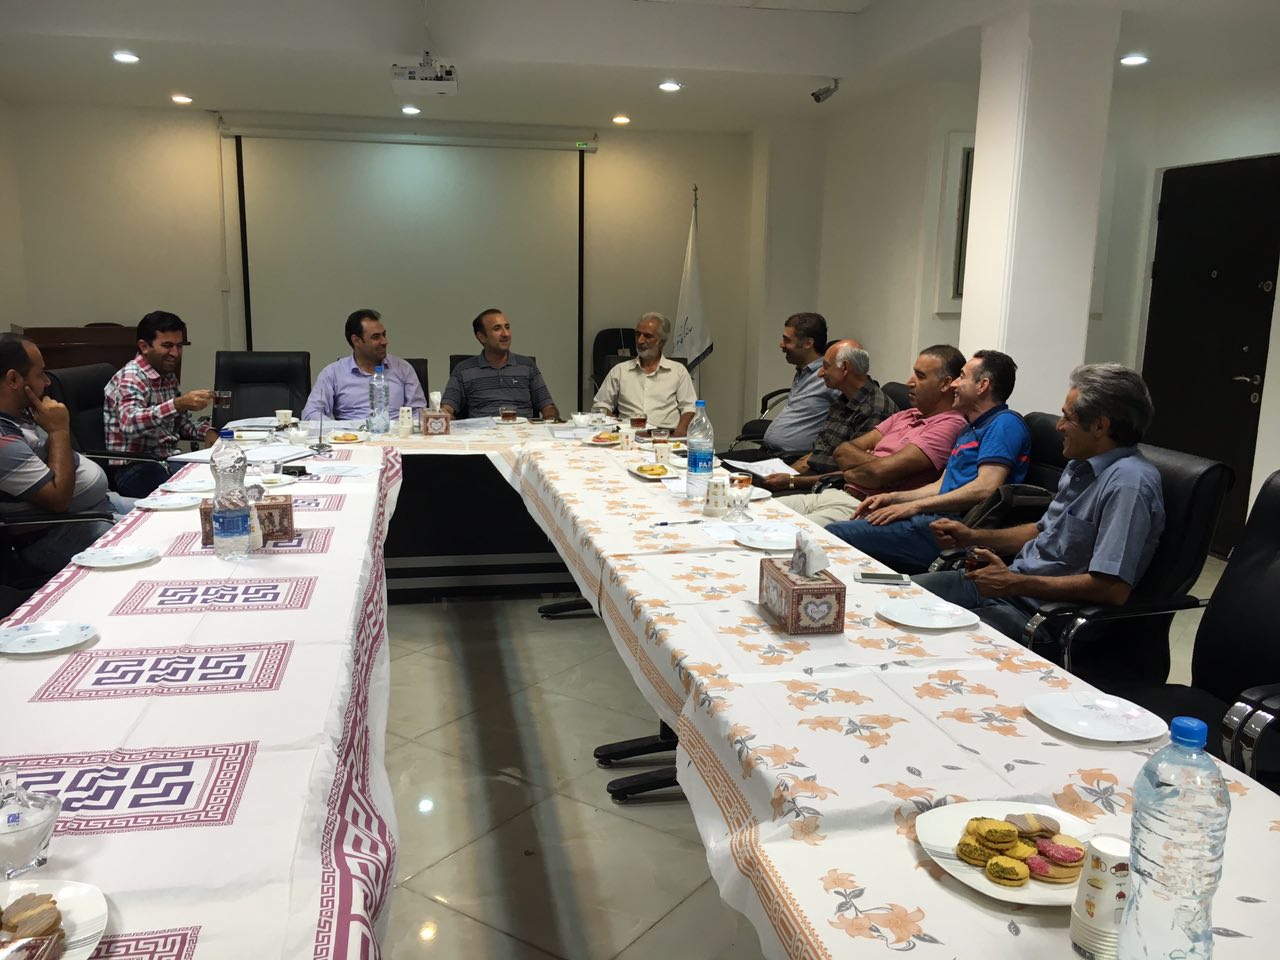 جلسه سرپرست دفتر نمایندگی با کمیته مجریان و مهندسین مجری برگزار شد
